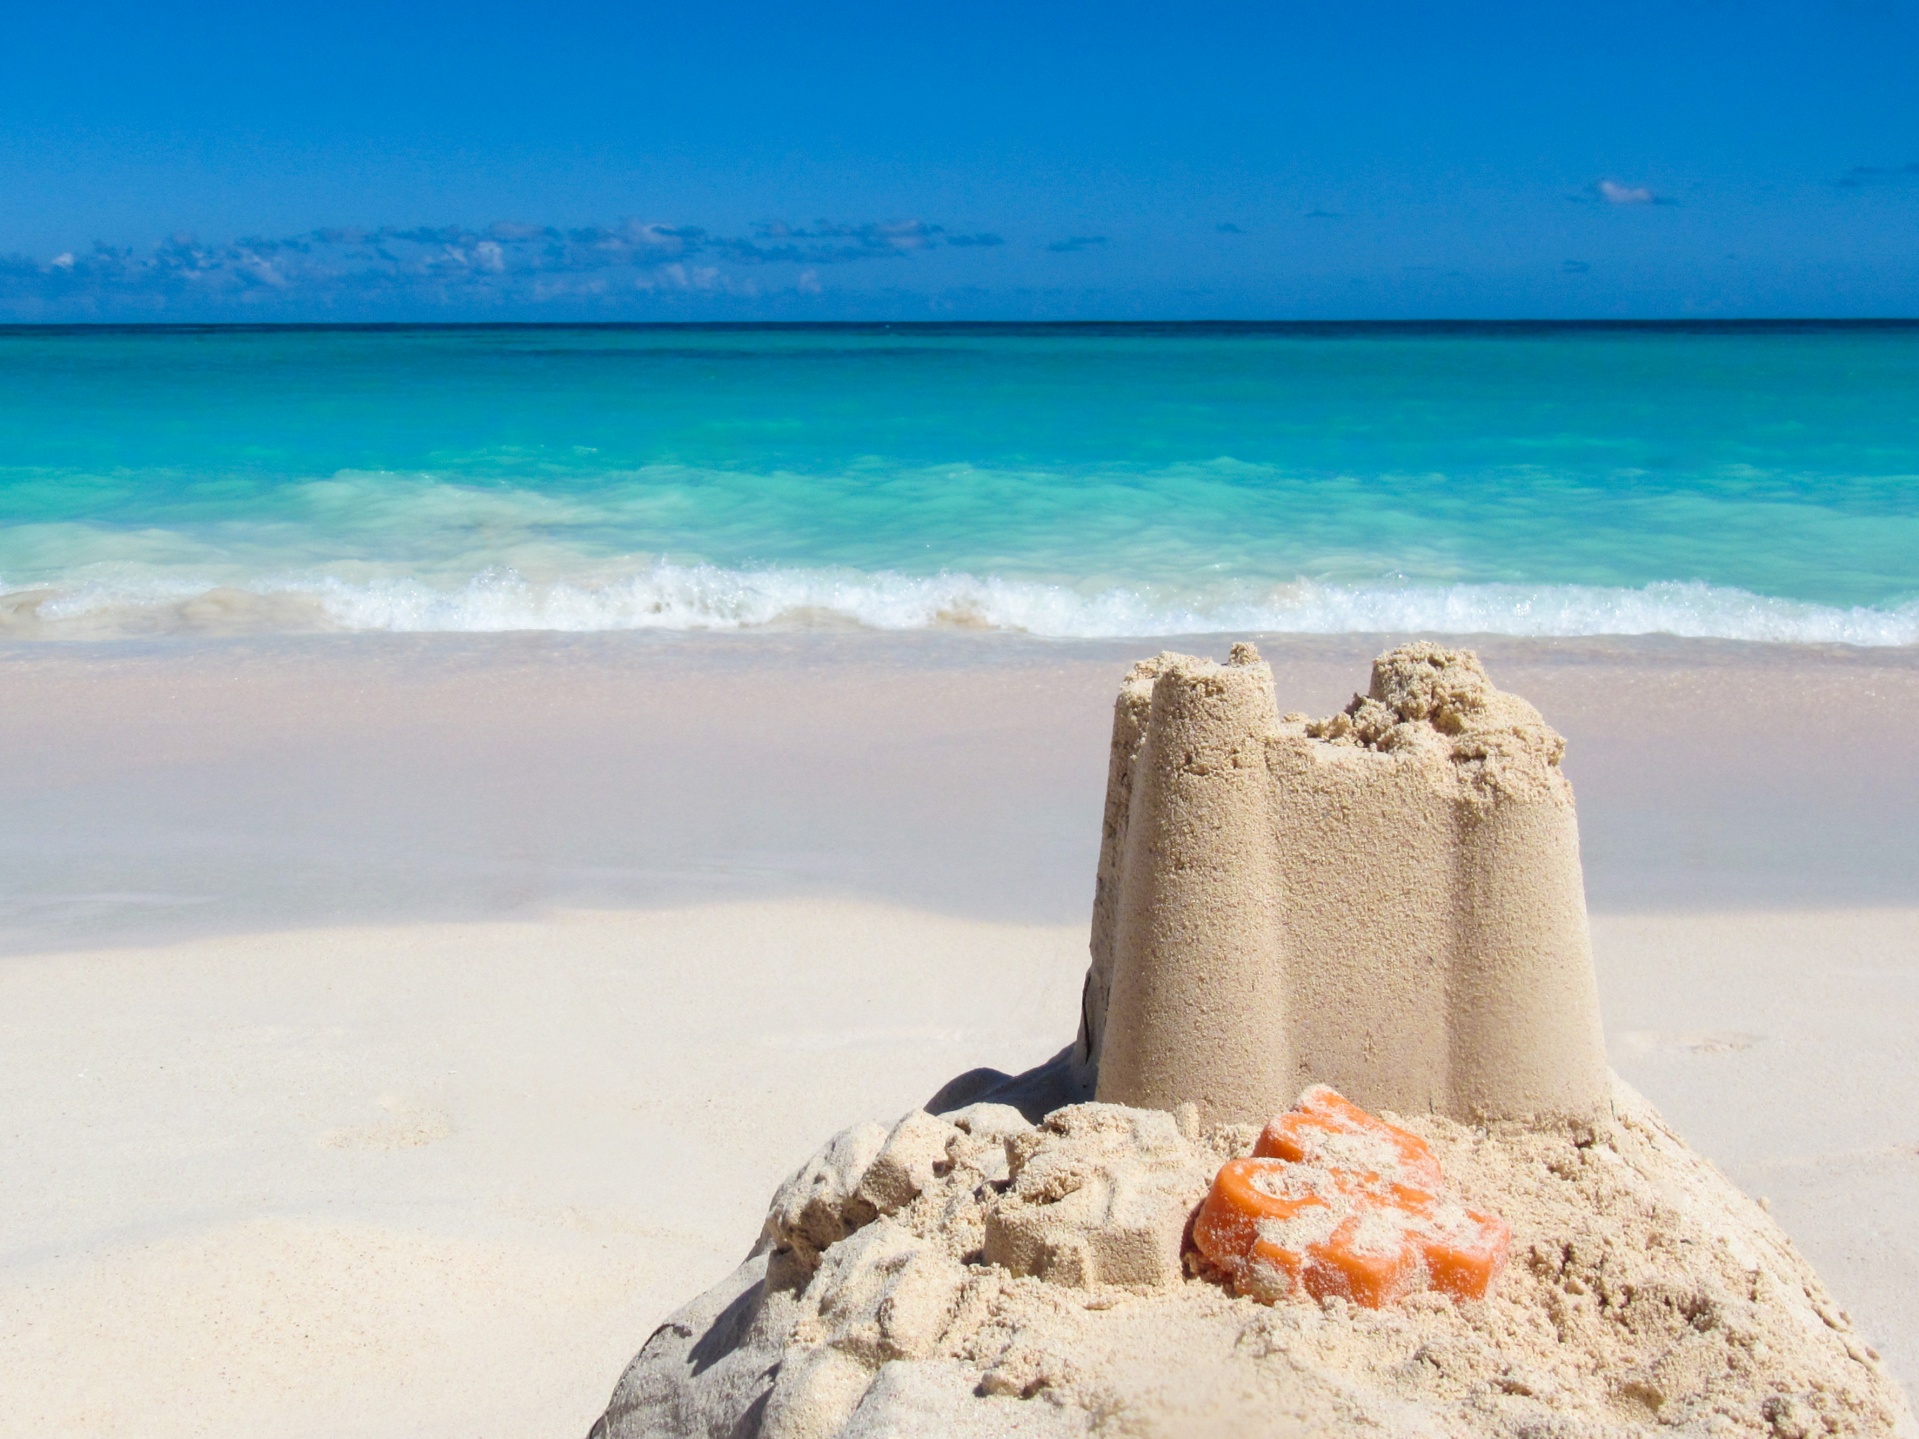 sand-castle-on-the-beach-1580301339hg3 | teacherhead